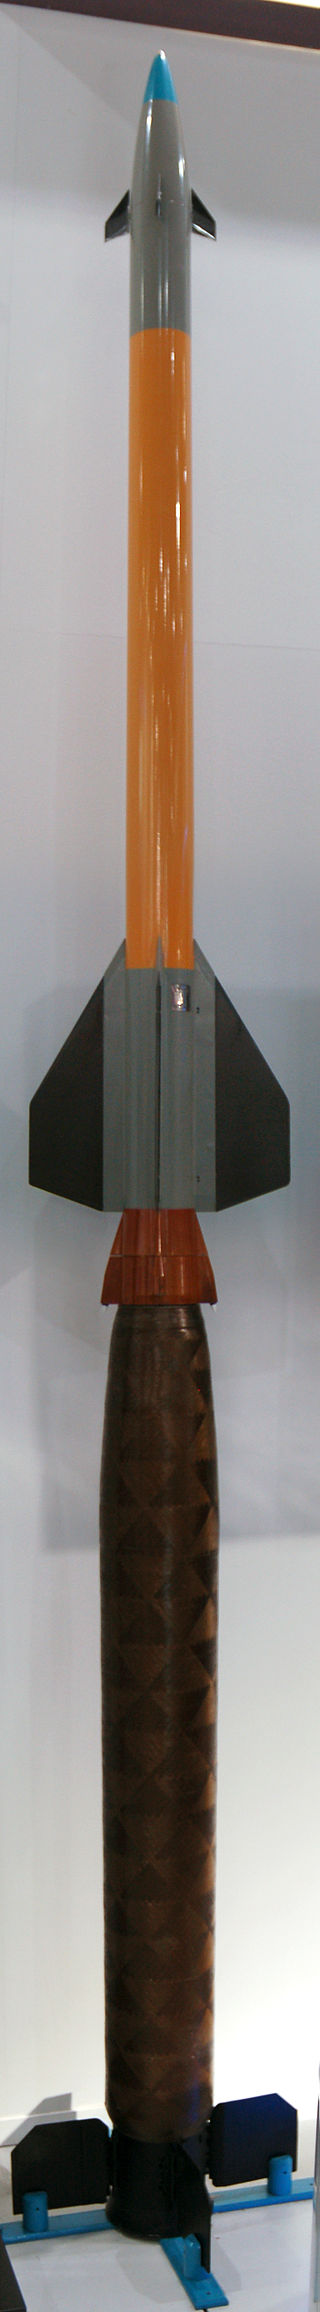 320px-Pantsir-S1_missile_maks2009.jpg